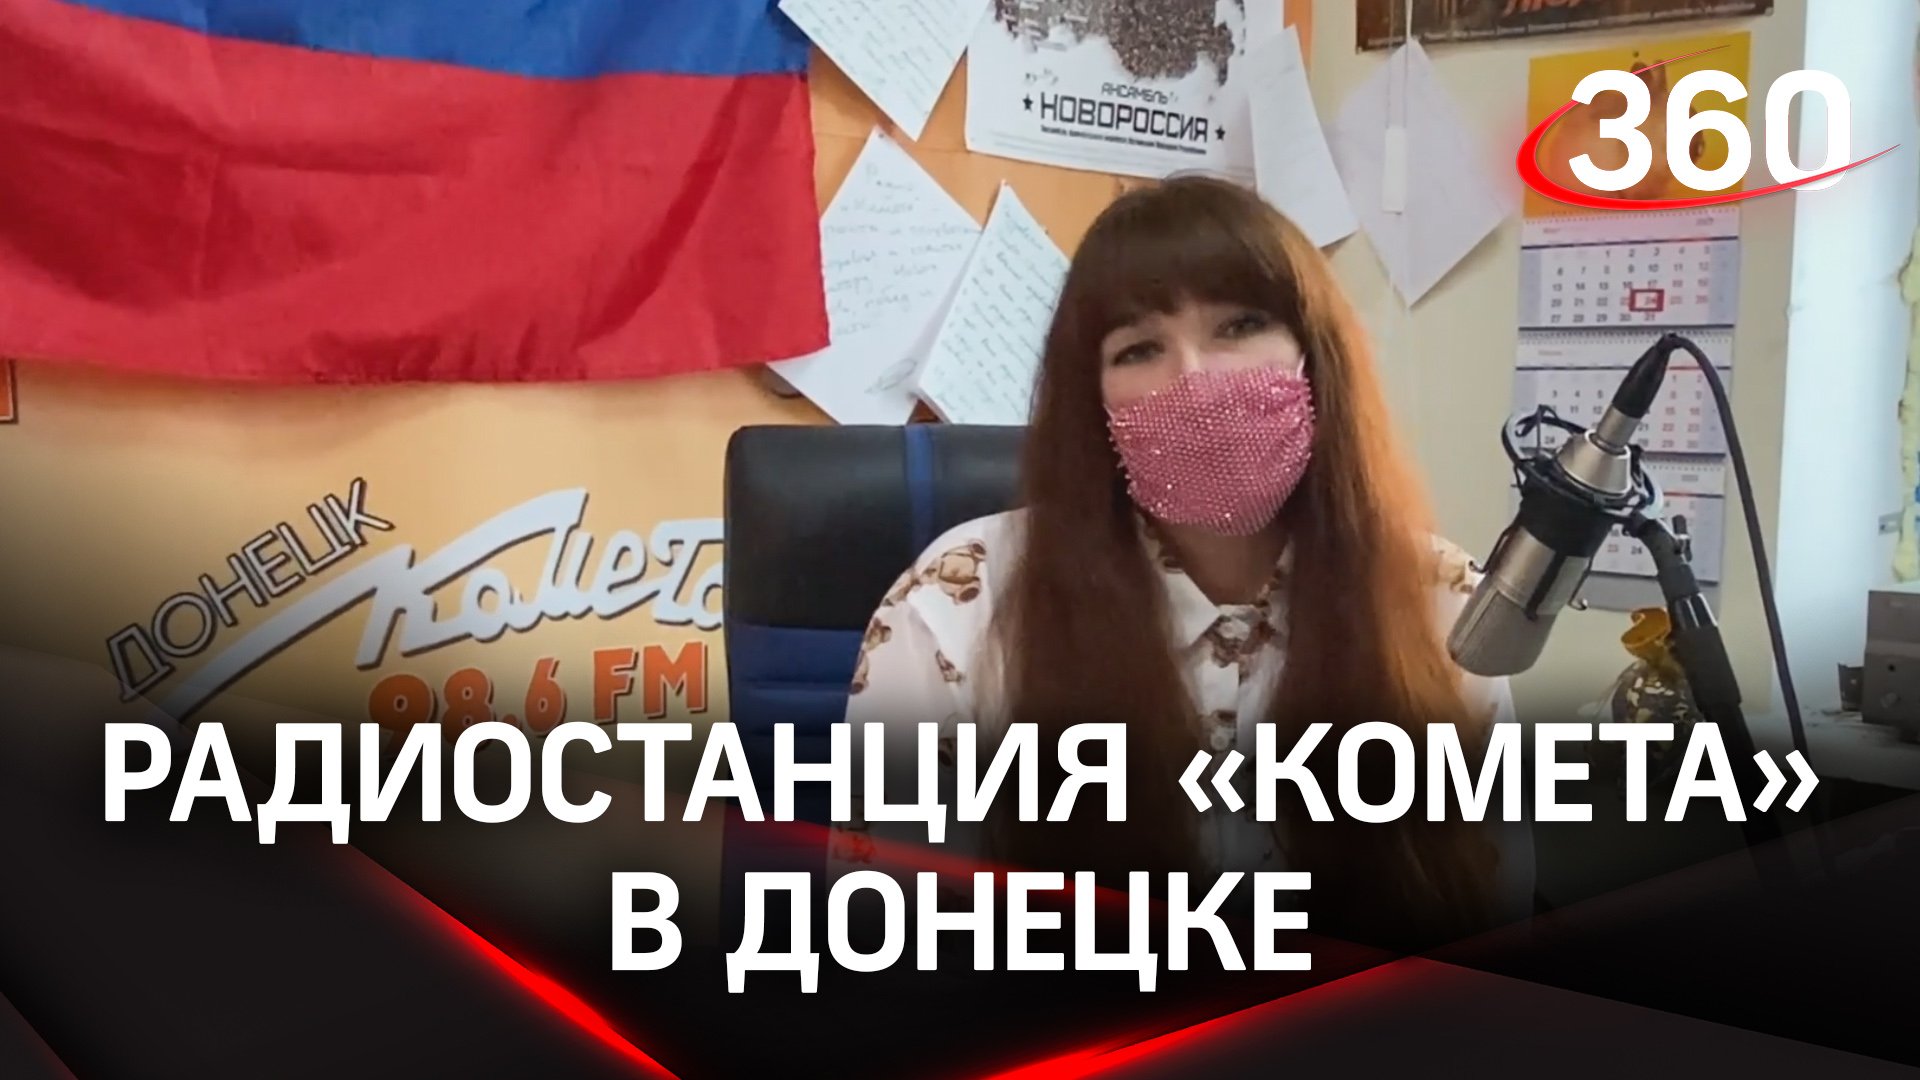 «Это первая радиостанция, которая начала своё вещание в воюющем Донецке»